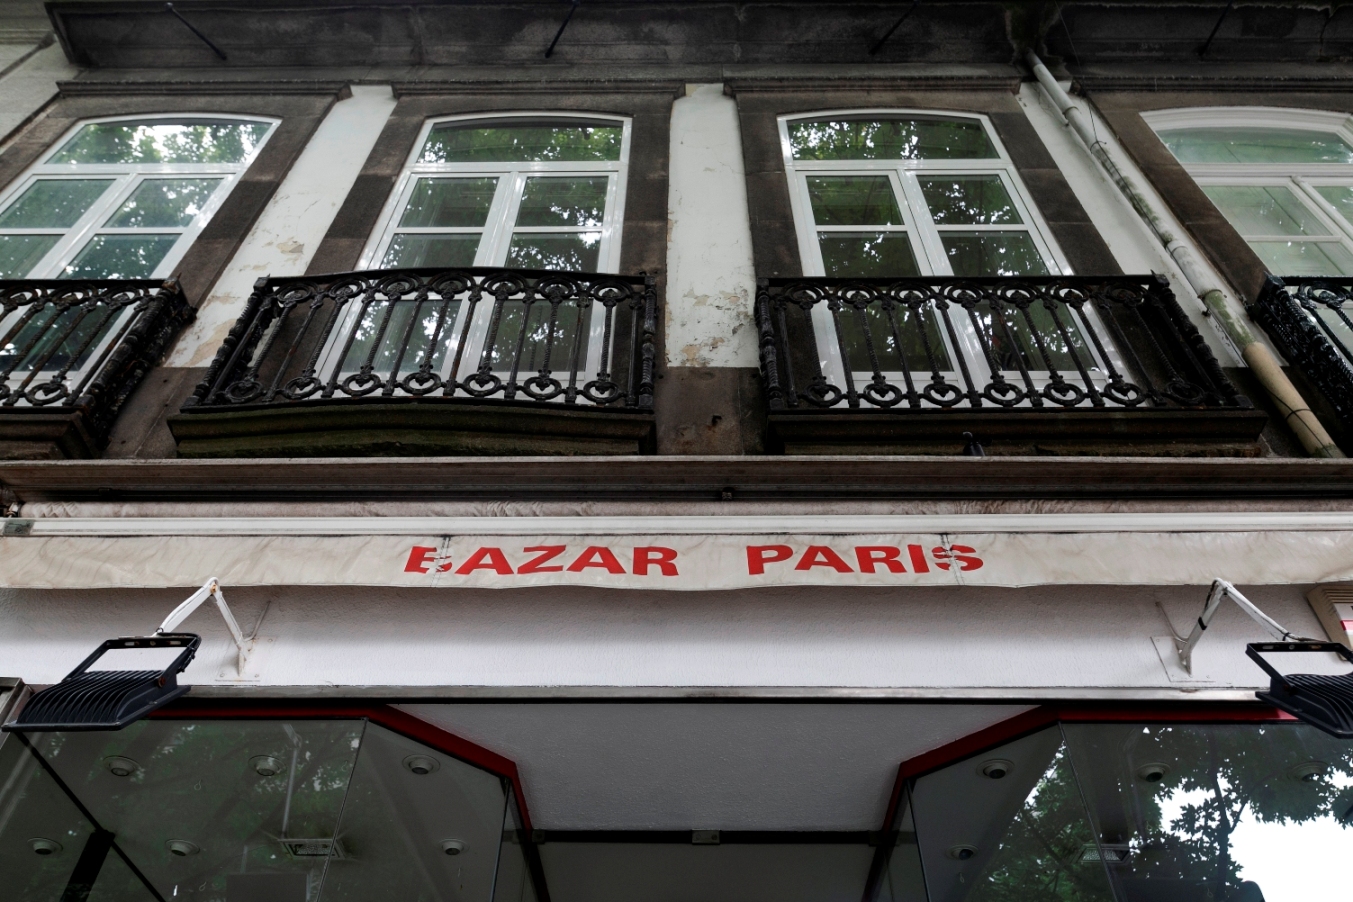 Bazar Paris - Lojas